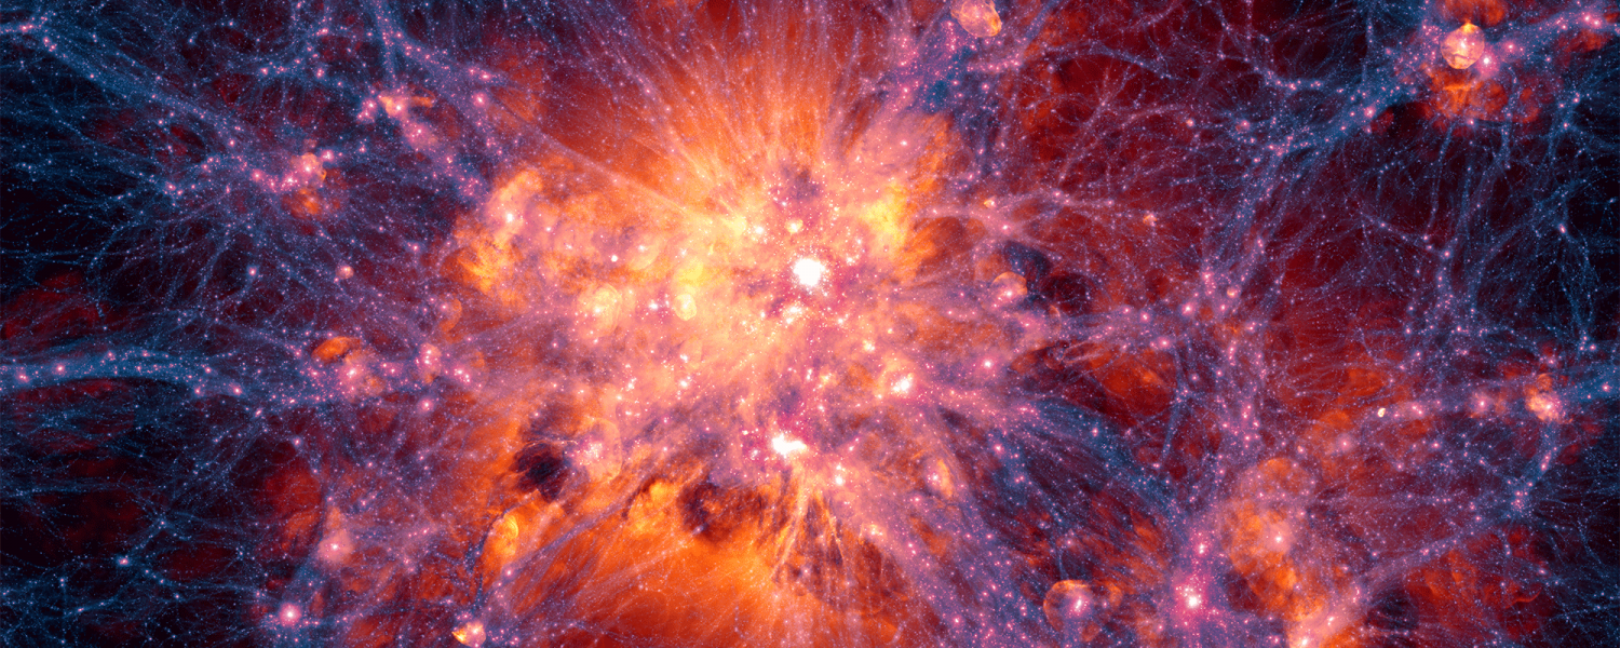 Une projection à grande échelle centrée sur l’amas de galaxies le plus massif dans la simulation Illustris. Elle montre la distribution de la matière noire en filaments (bleu, violet et pourpre), laquelle interagit gravitationnellement avec la matière ordinaire et favorise la formation des amas de galaxies. Les enveloppes de gaz teintées de rouge, rose ou orange sont principalement créées par l’explosion de supernovae ou les jets des trous noirs supermassifs. © Illustris Collaboration